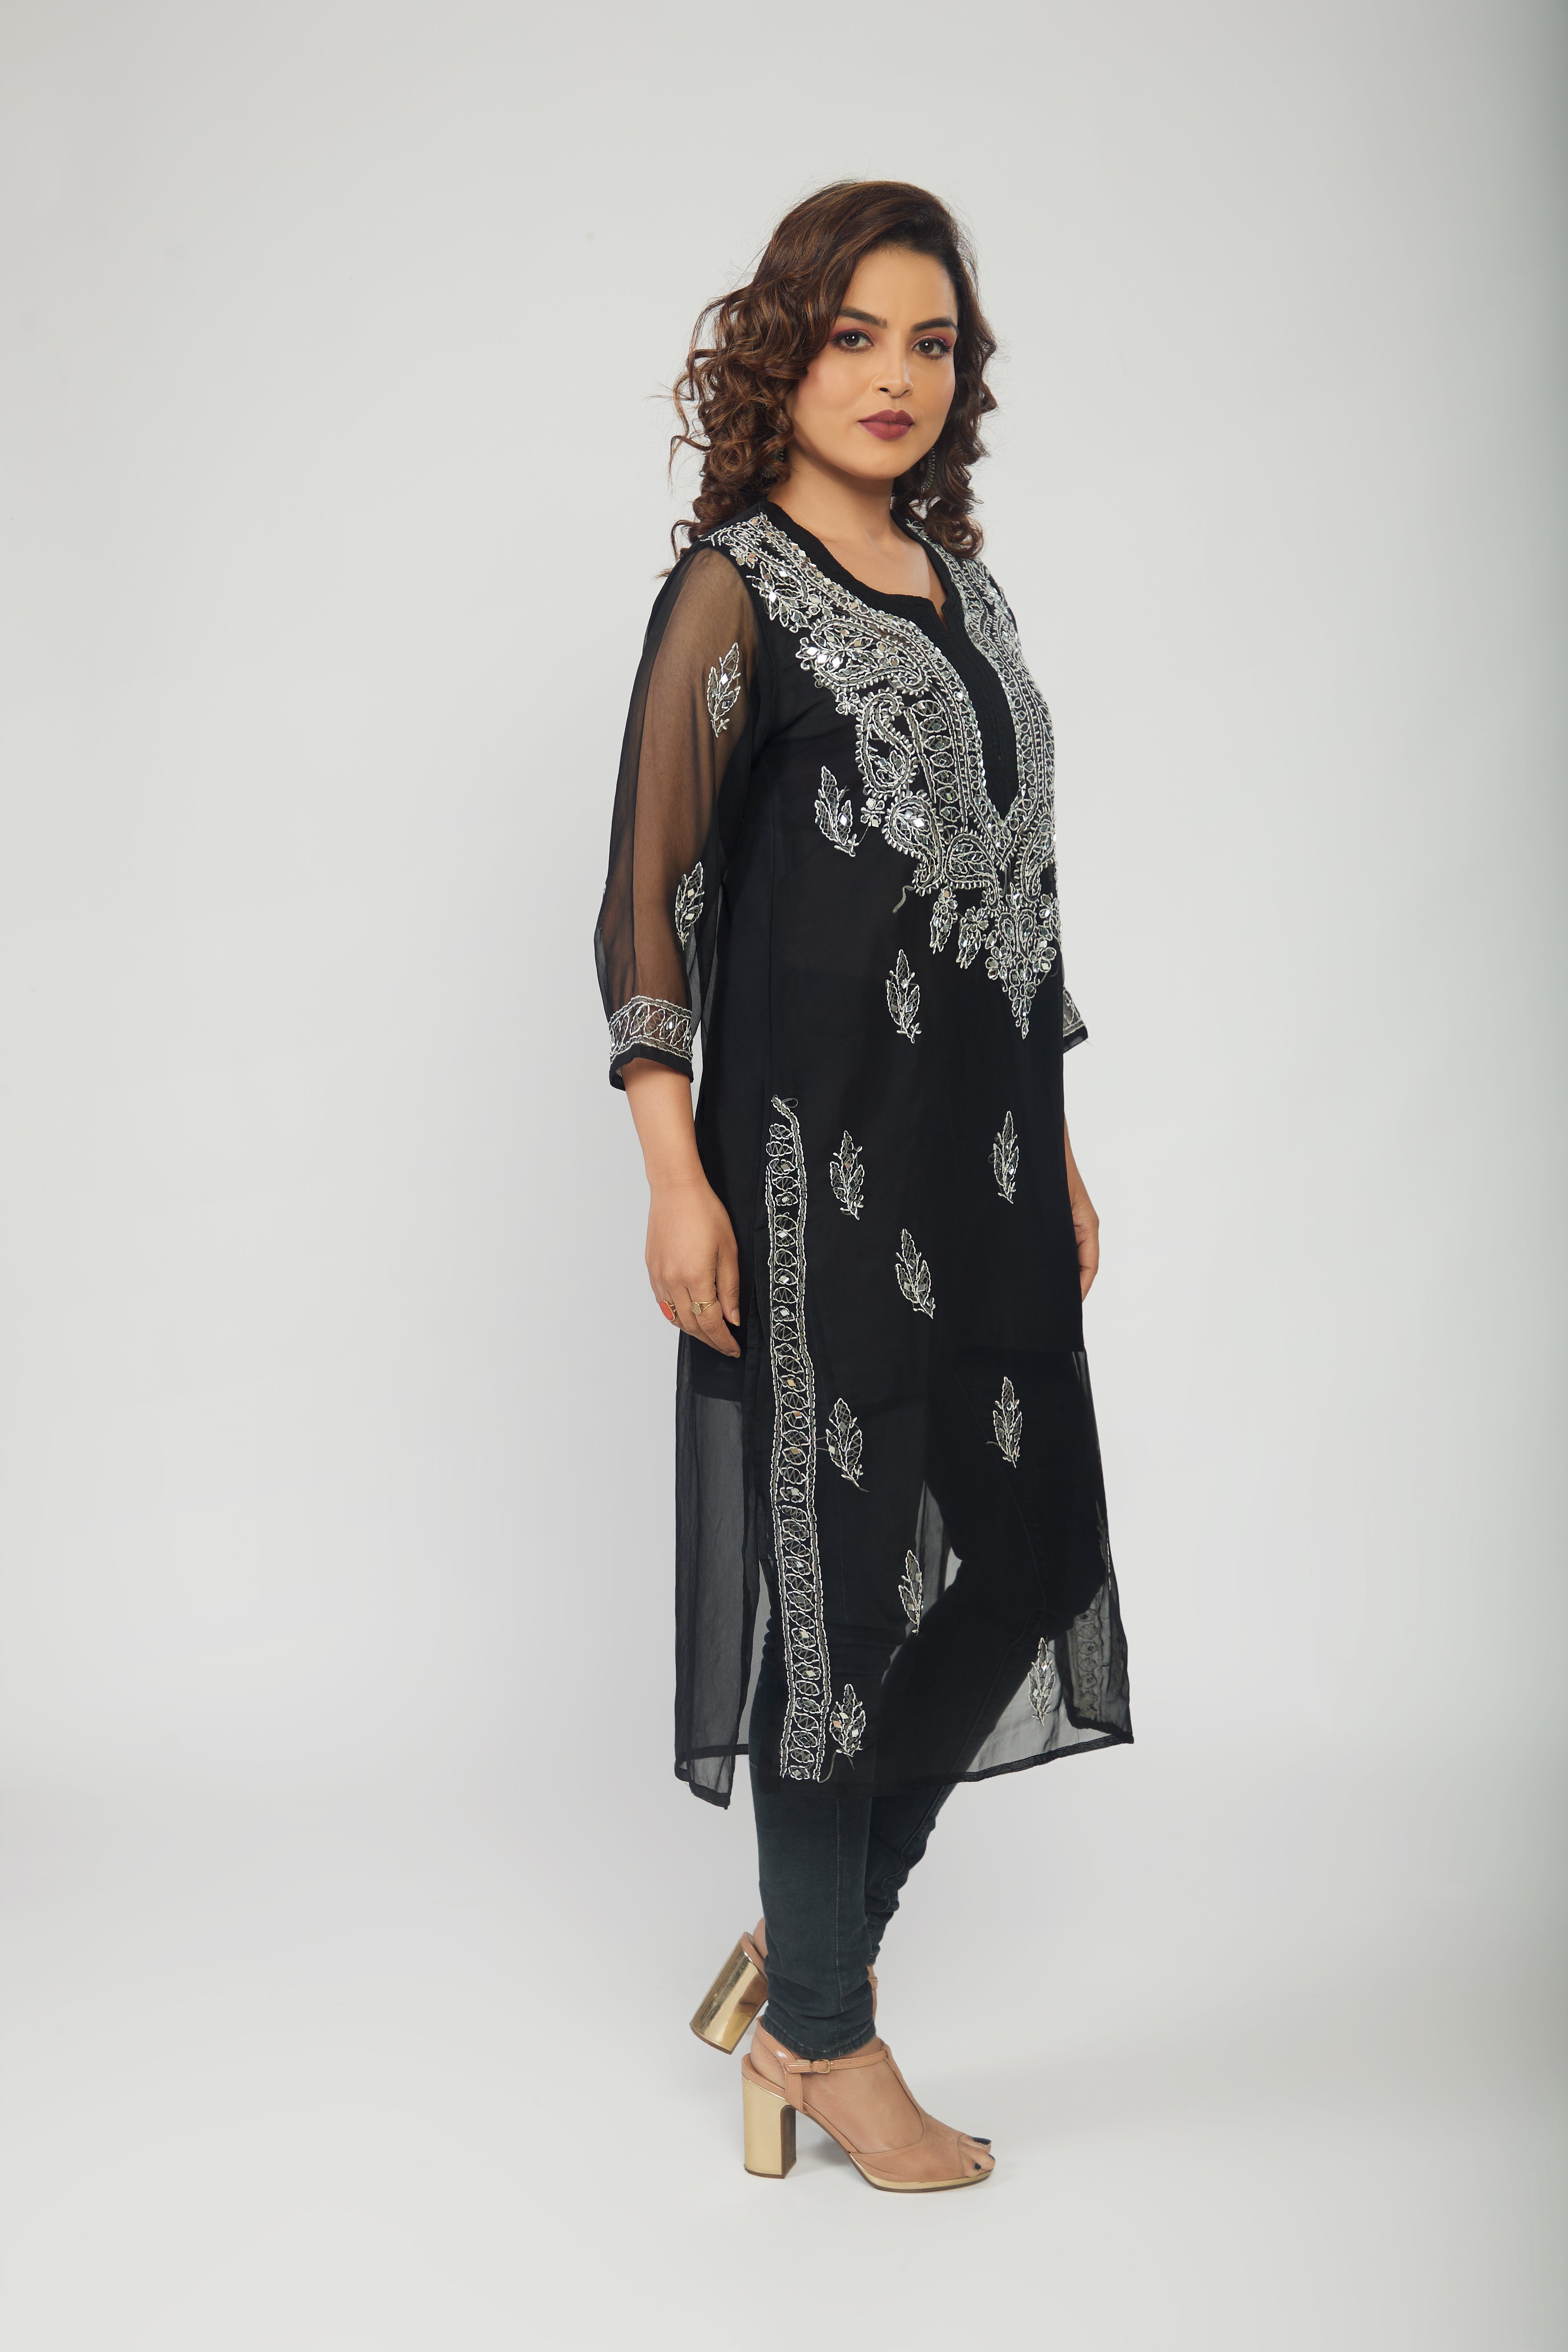 ISHIEQA's Black Georgette Chikankari Kurti - AN0502D | Kurti neck designs,  A line kurti, Dress materials